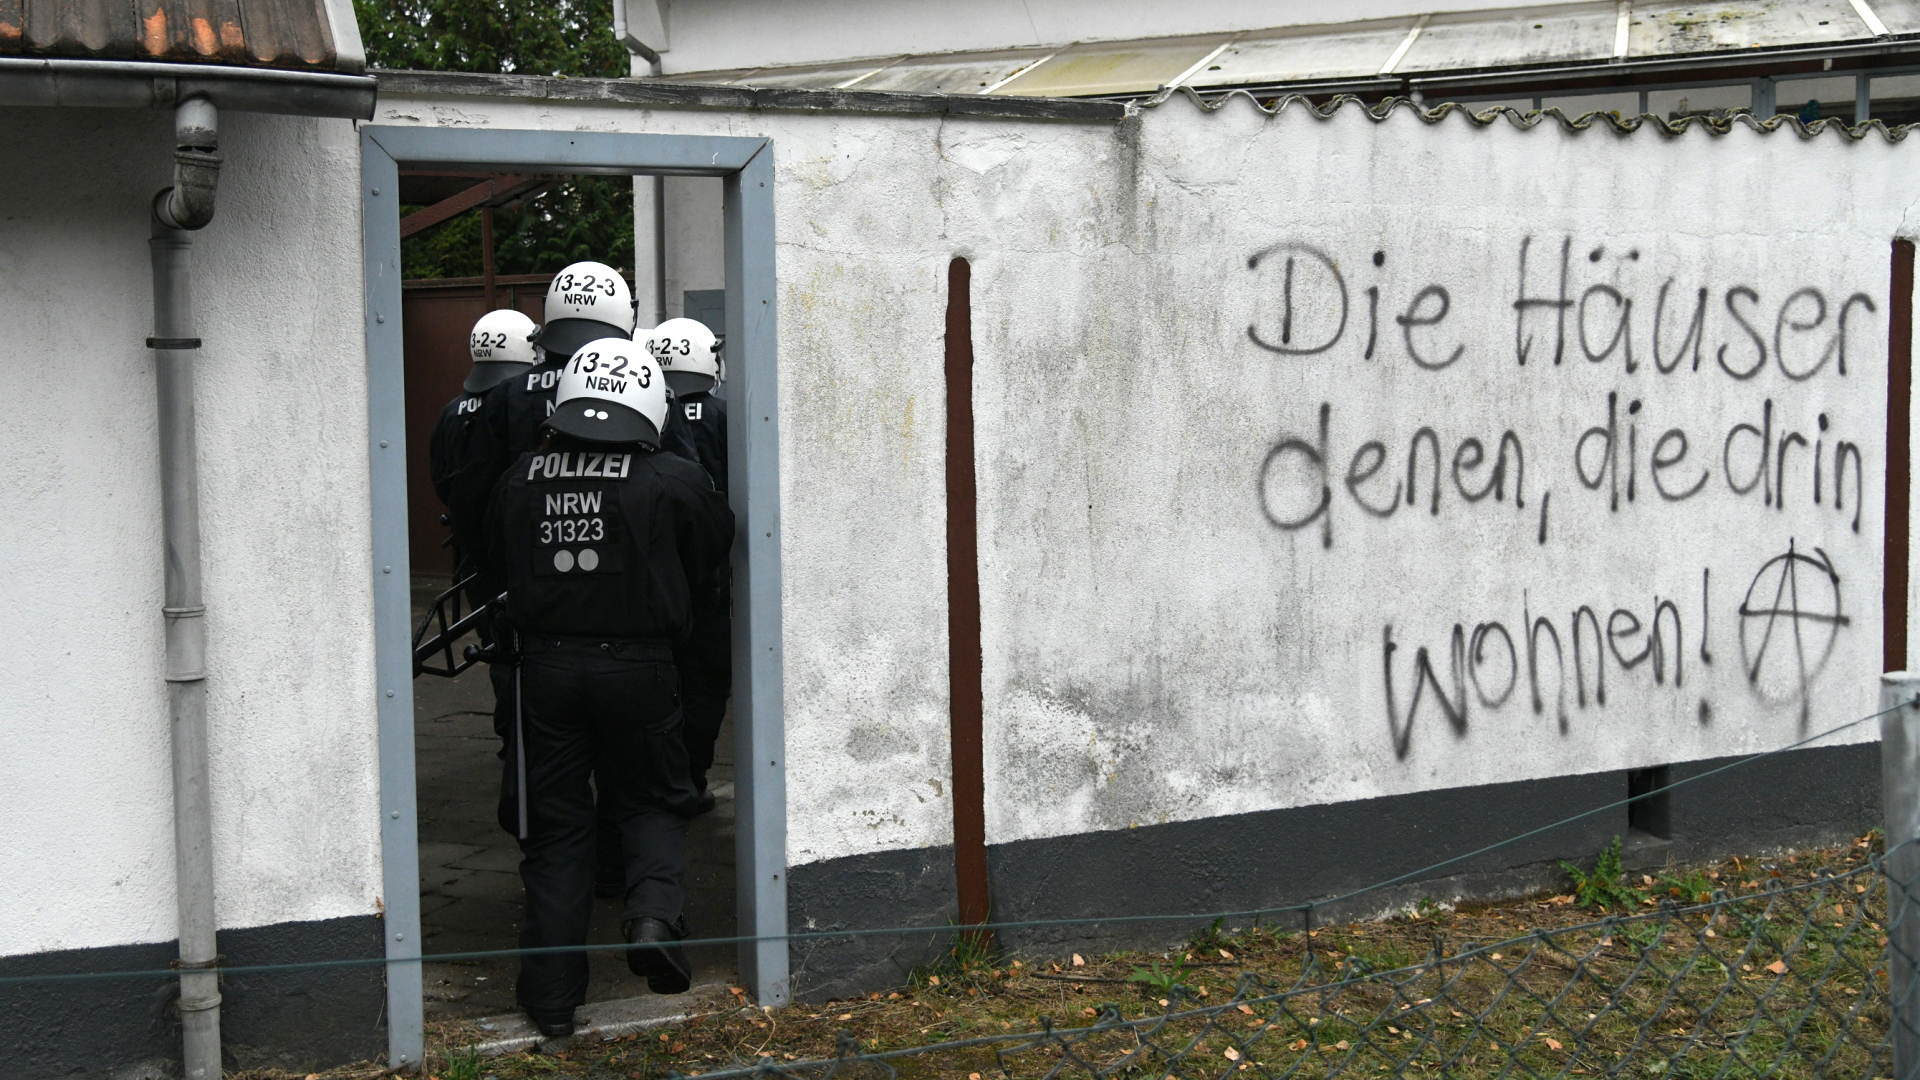 Polizei räumt von Braukohlegegnern besetztes Haus | Bildquelle: dpa